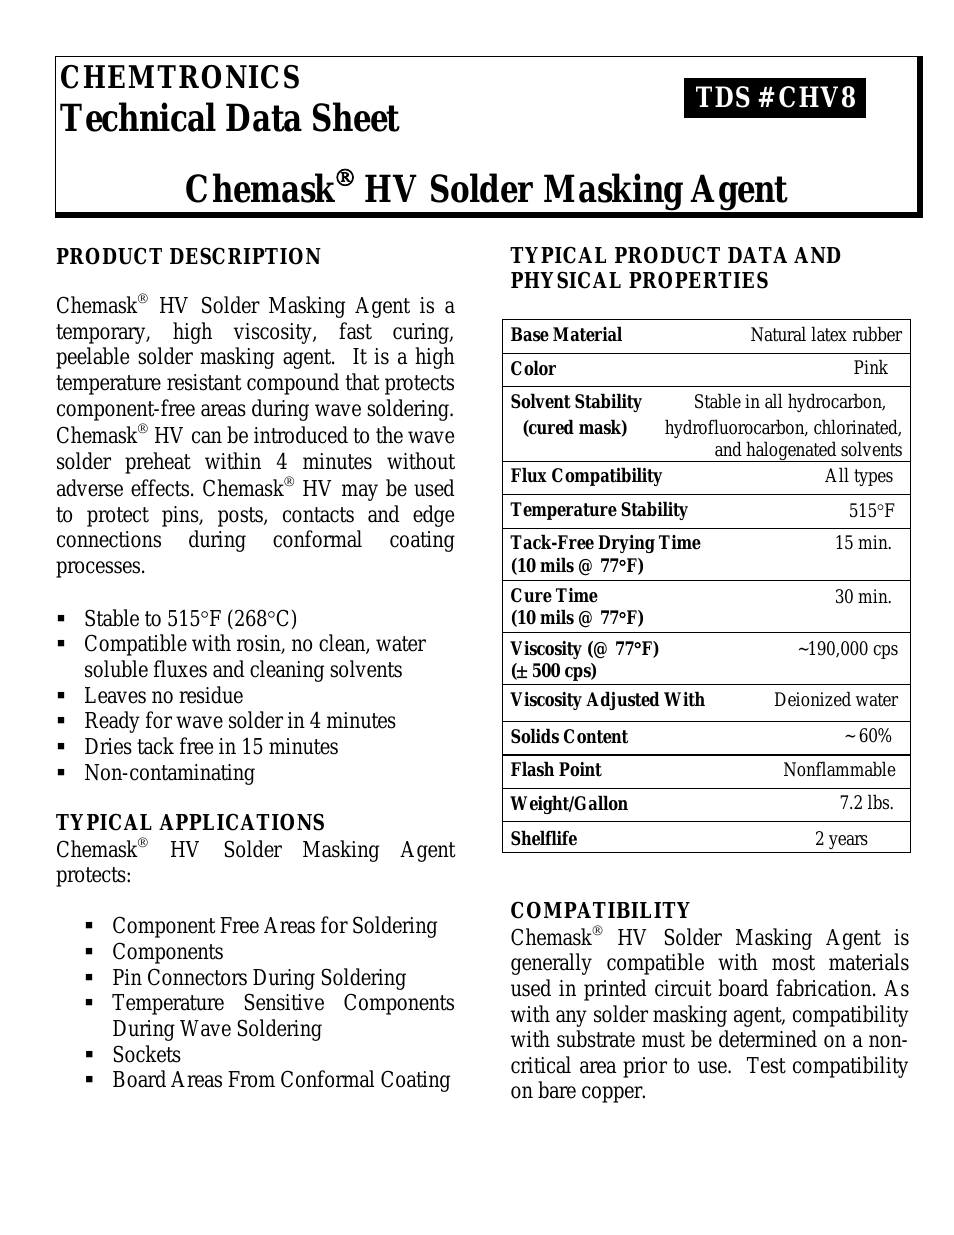 Chemask® HV - High Viscosity Peelable CHV8